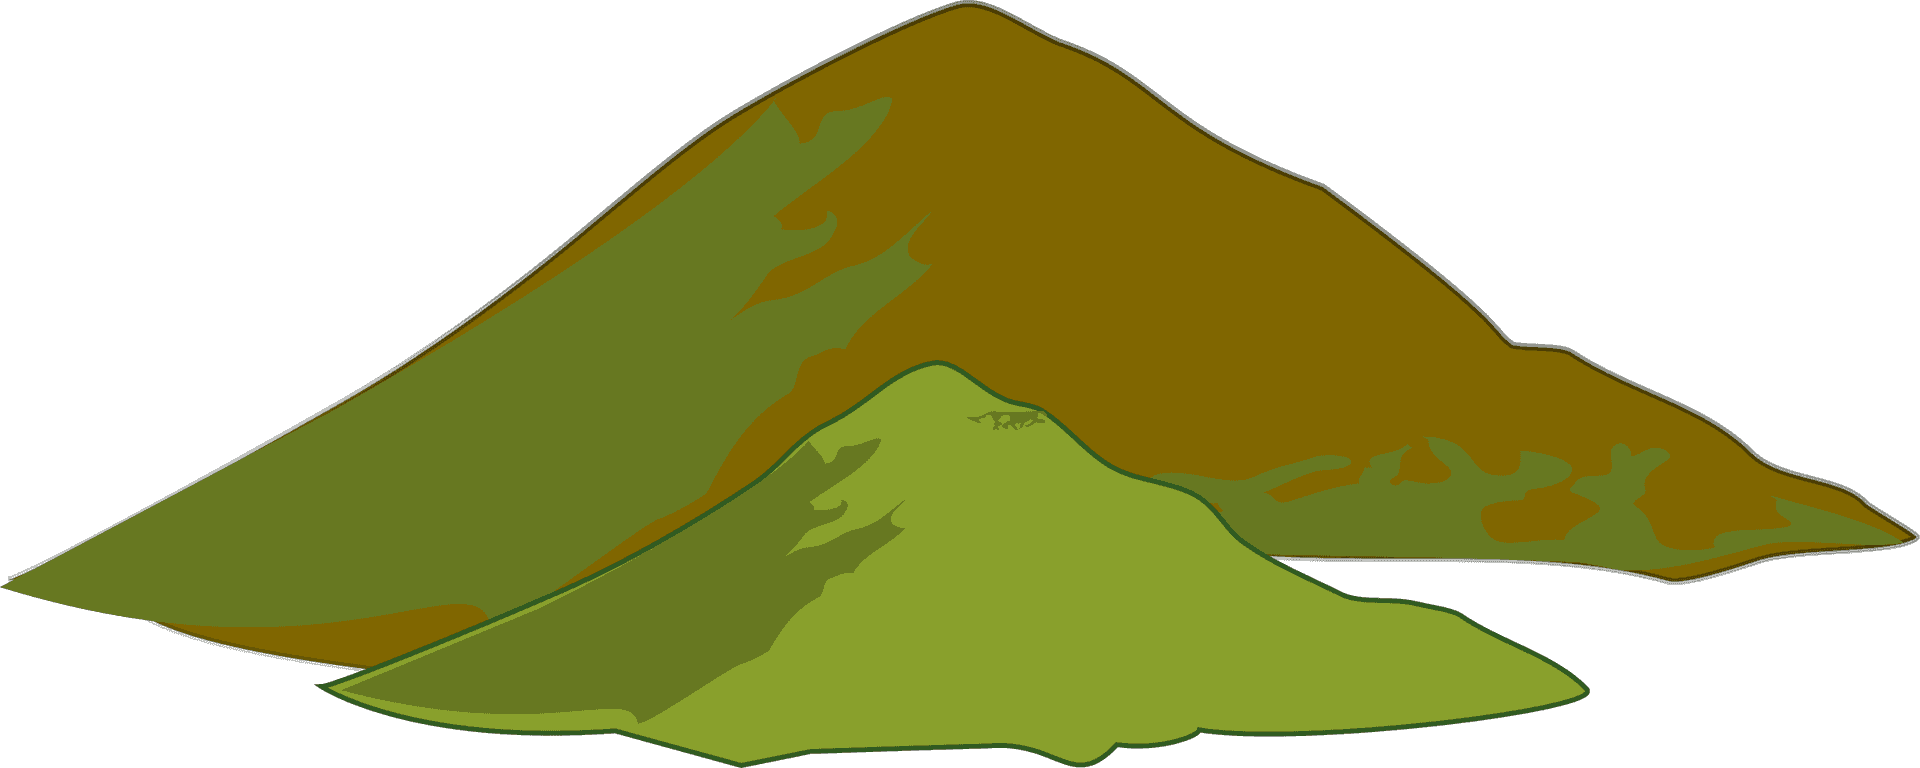 Stylized Mountain Range Illustration PNG